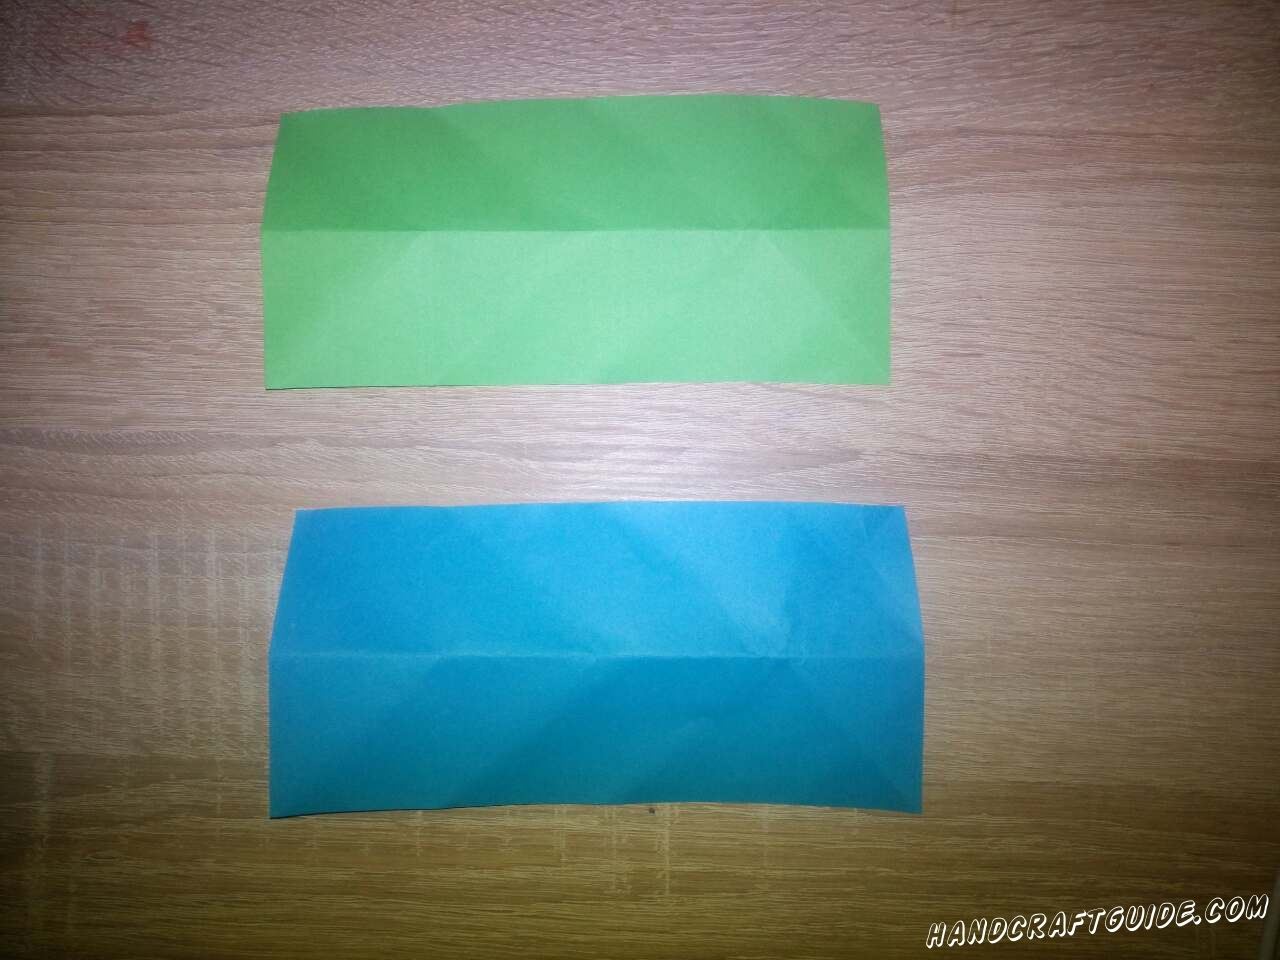 Вырезаем два прямоугольника, синего и зелёного цвета